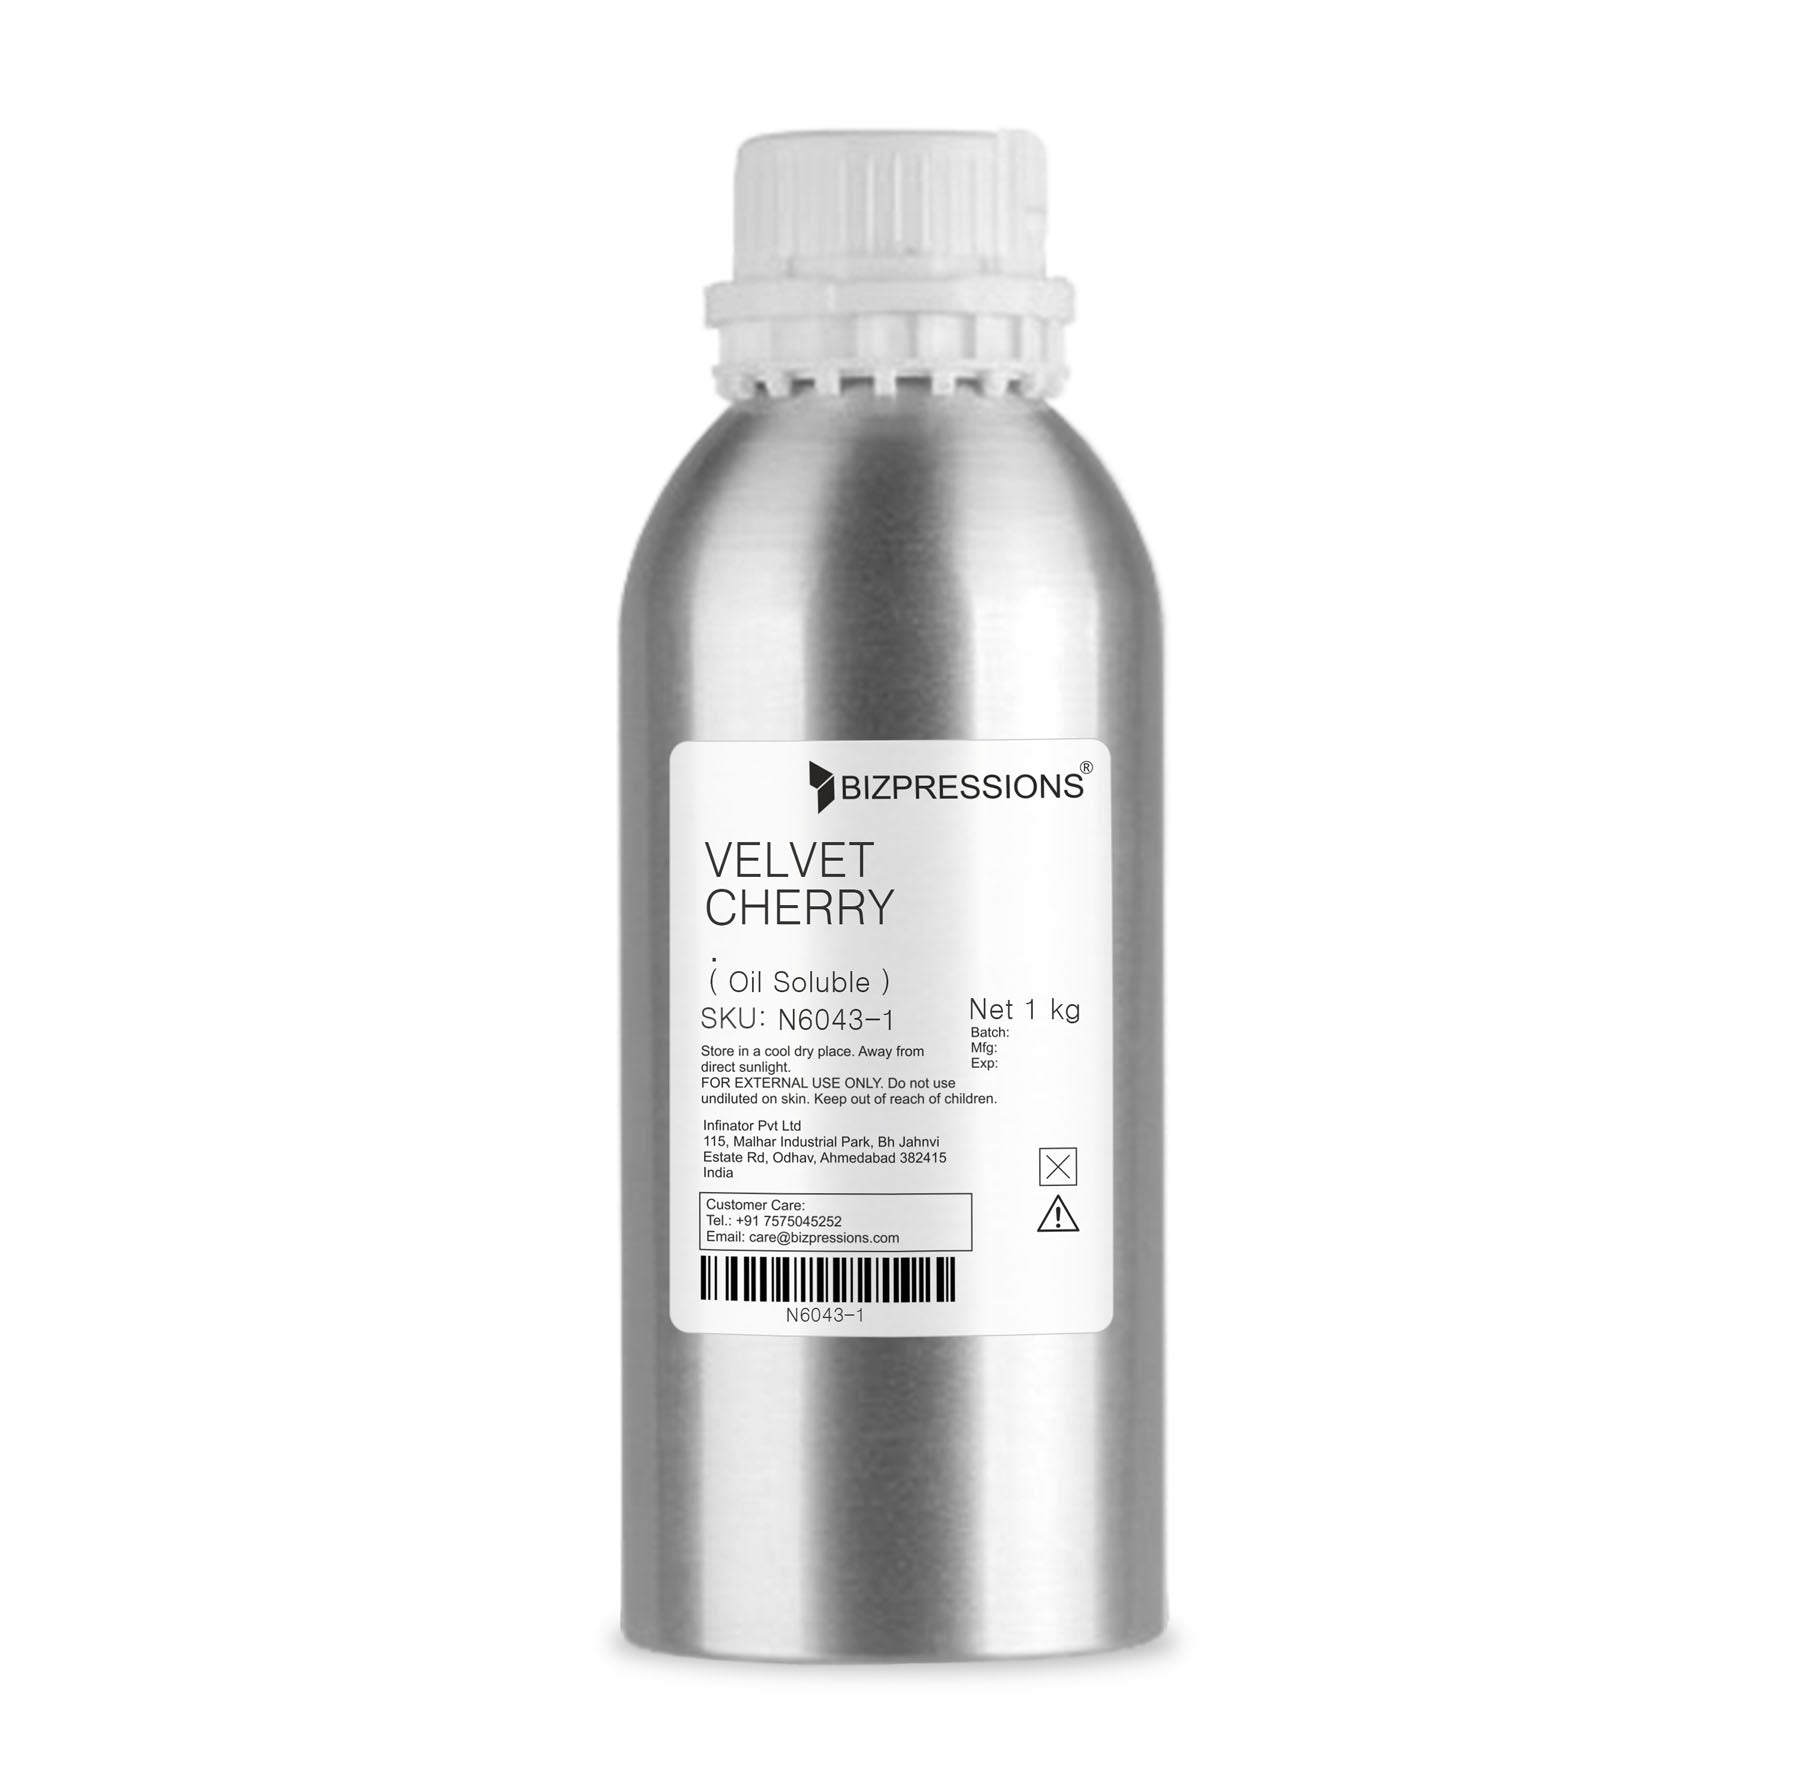 VELVET CHERRY - Fragrance ( Oil Soluble ) - 1 kg